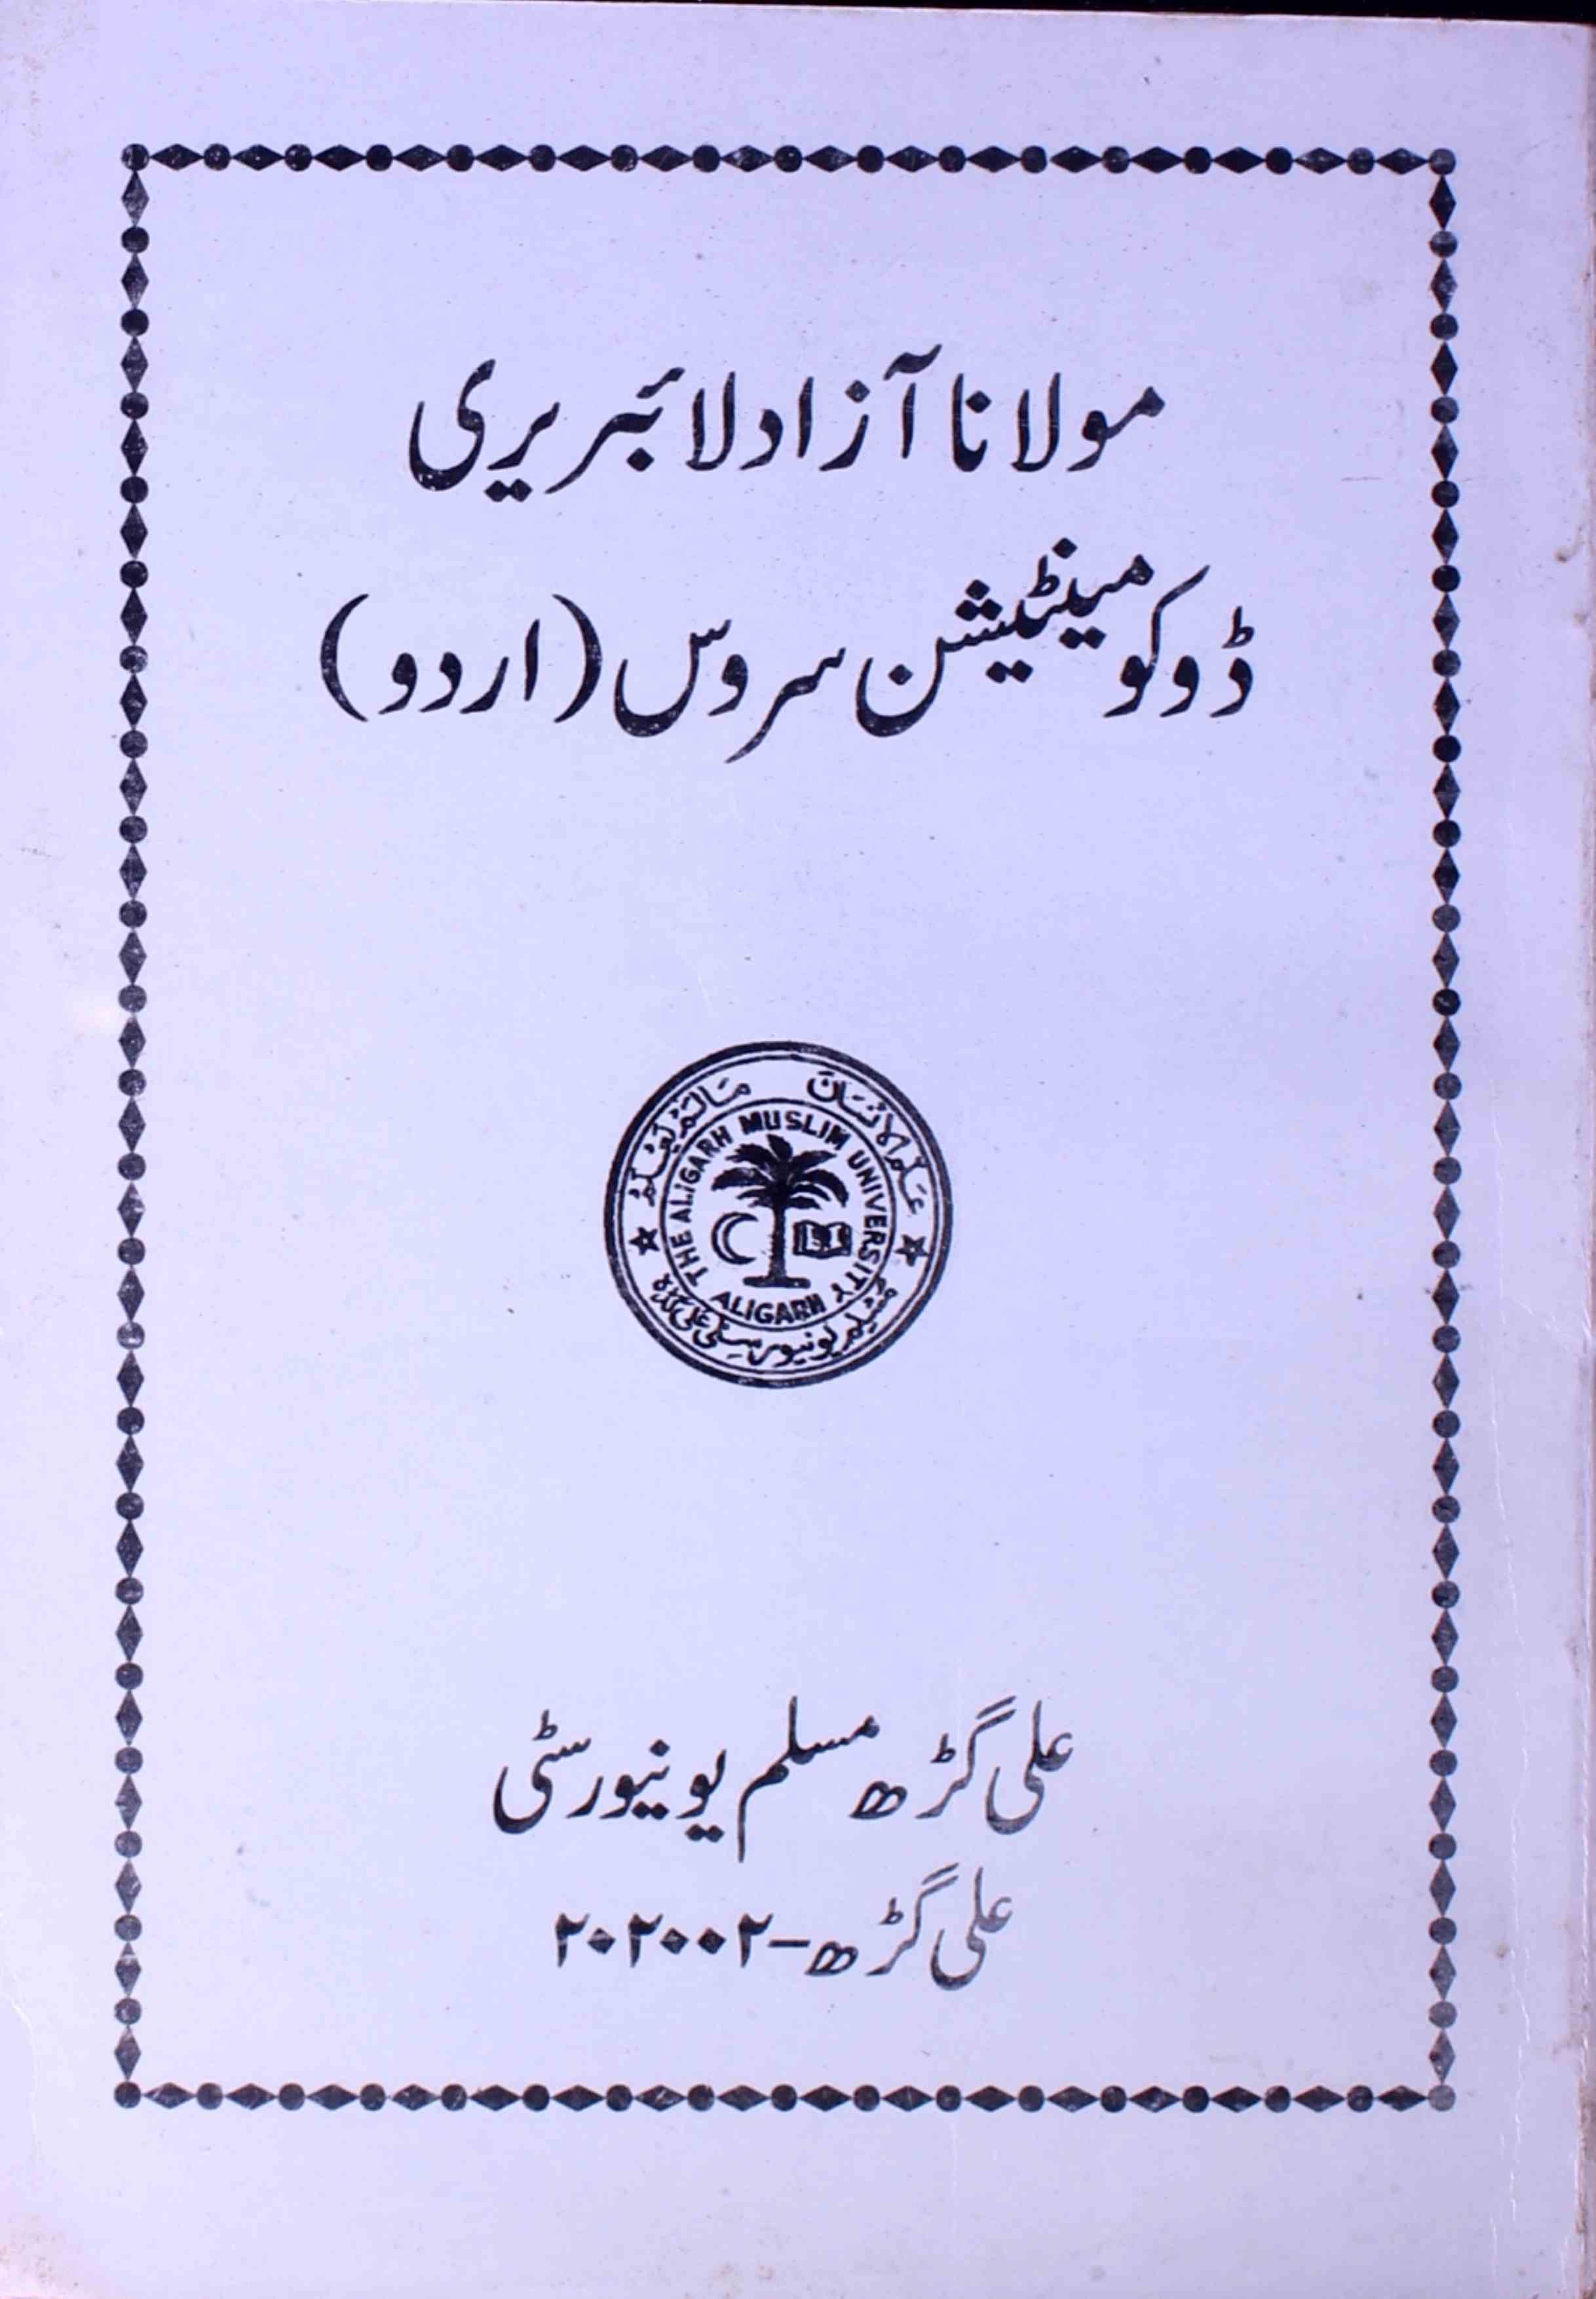 مولانا آزاد لائبریری ڈوکومینٹیشن سروس (اردو)